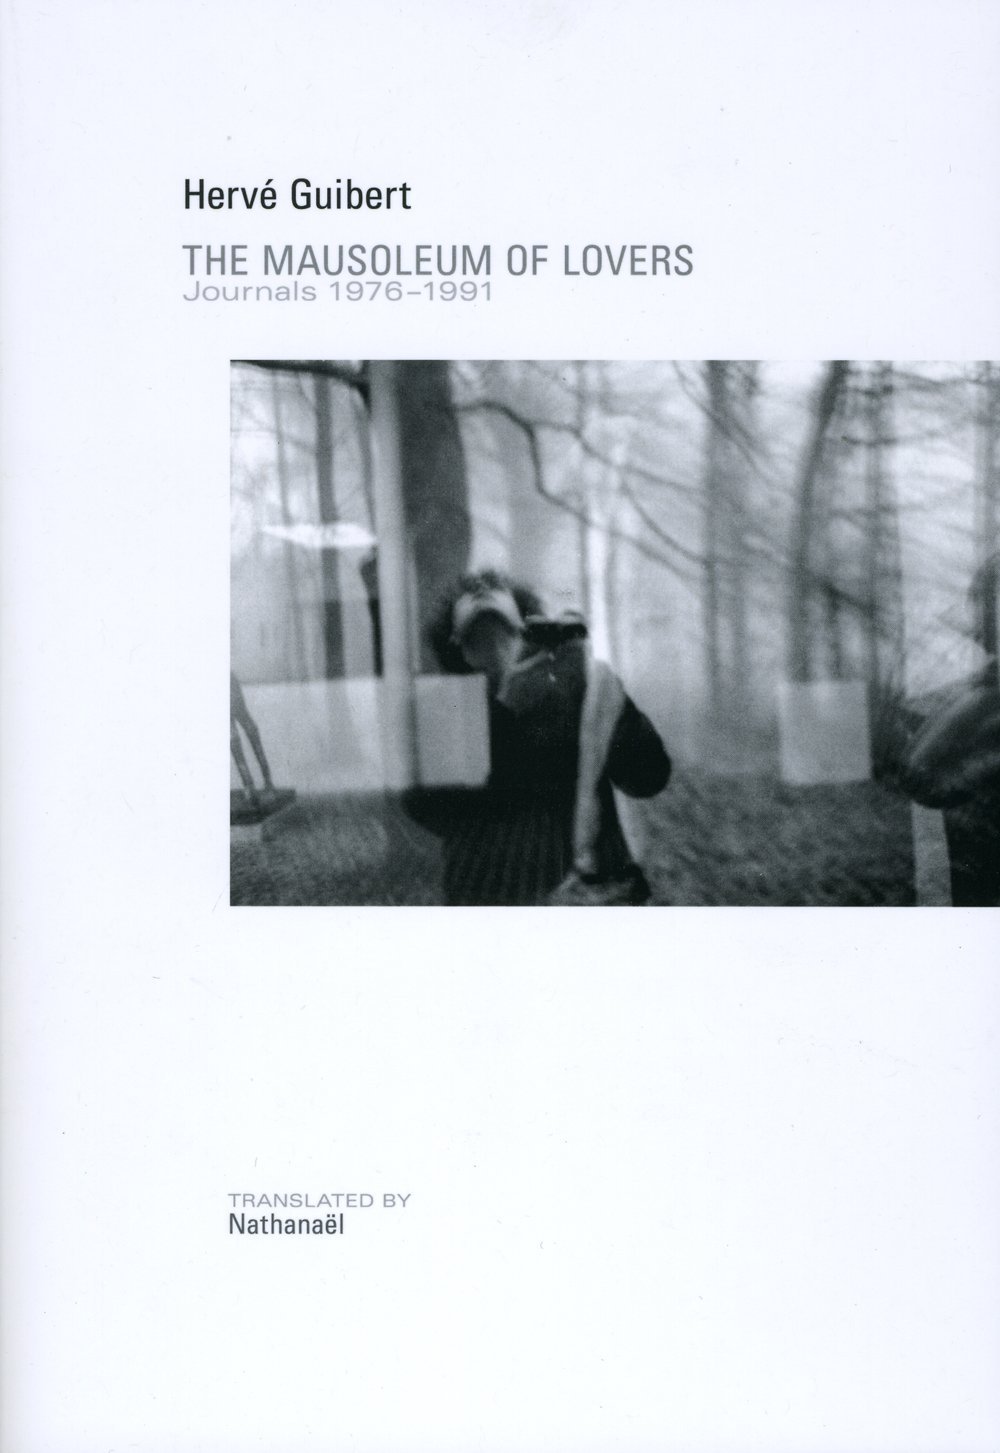 The Mausoleum of Lovers by Hervé Guibert